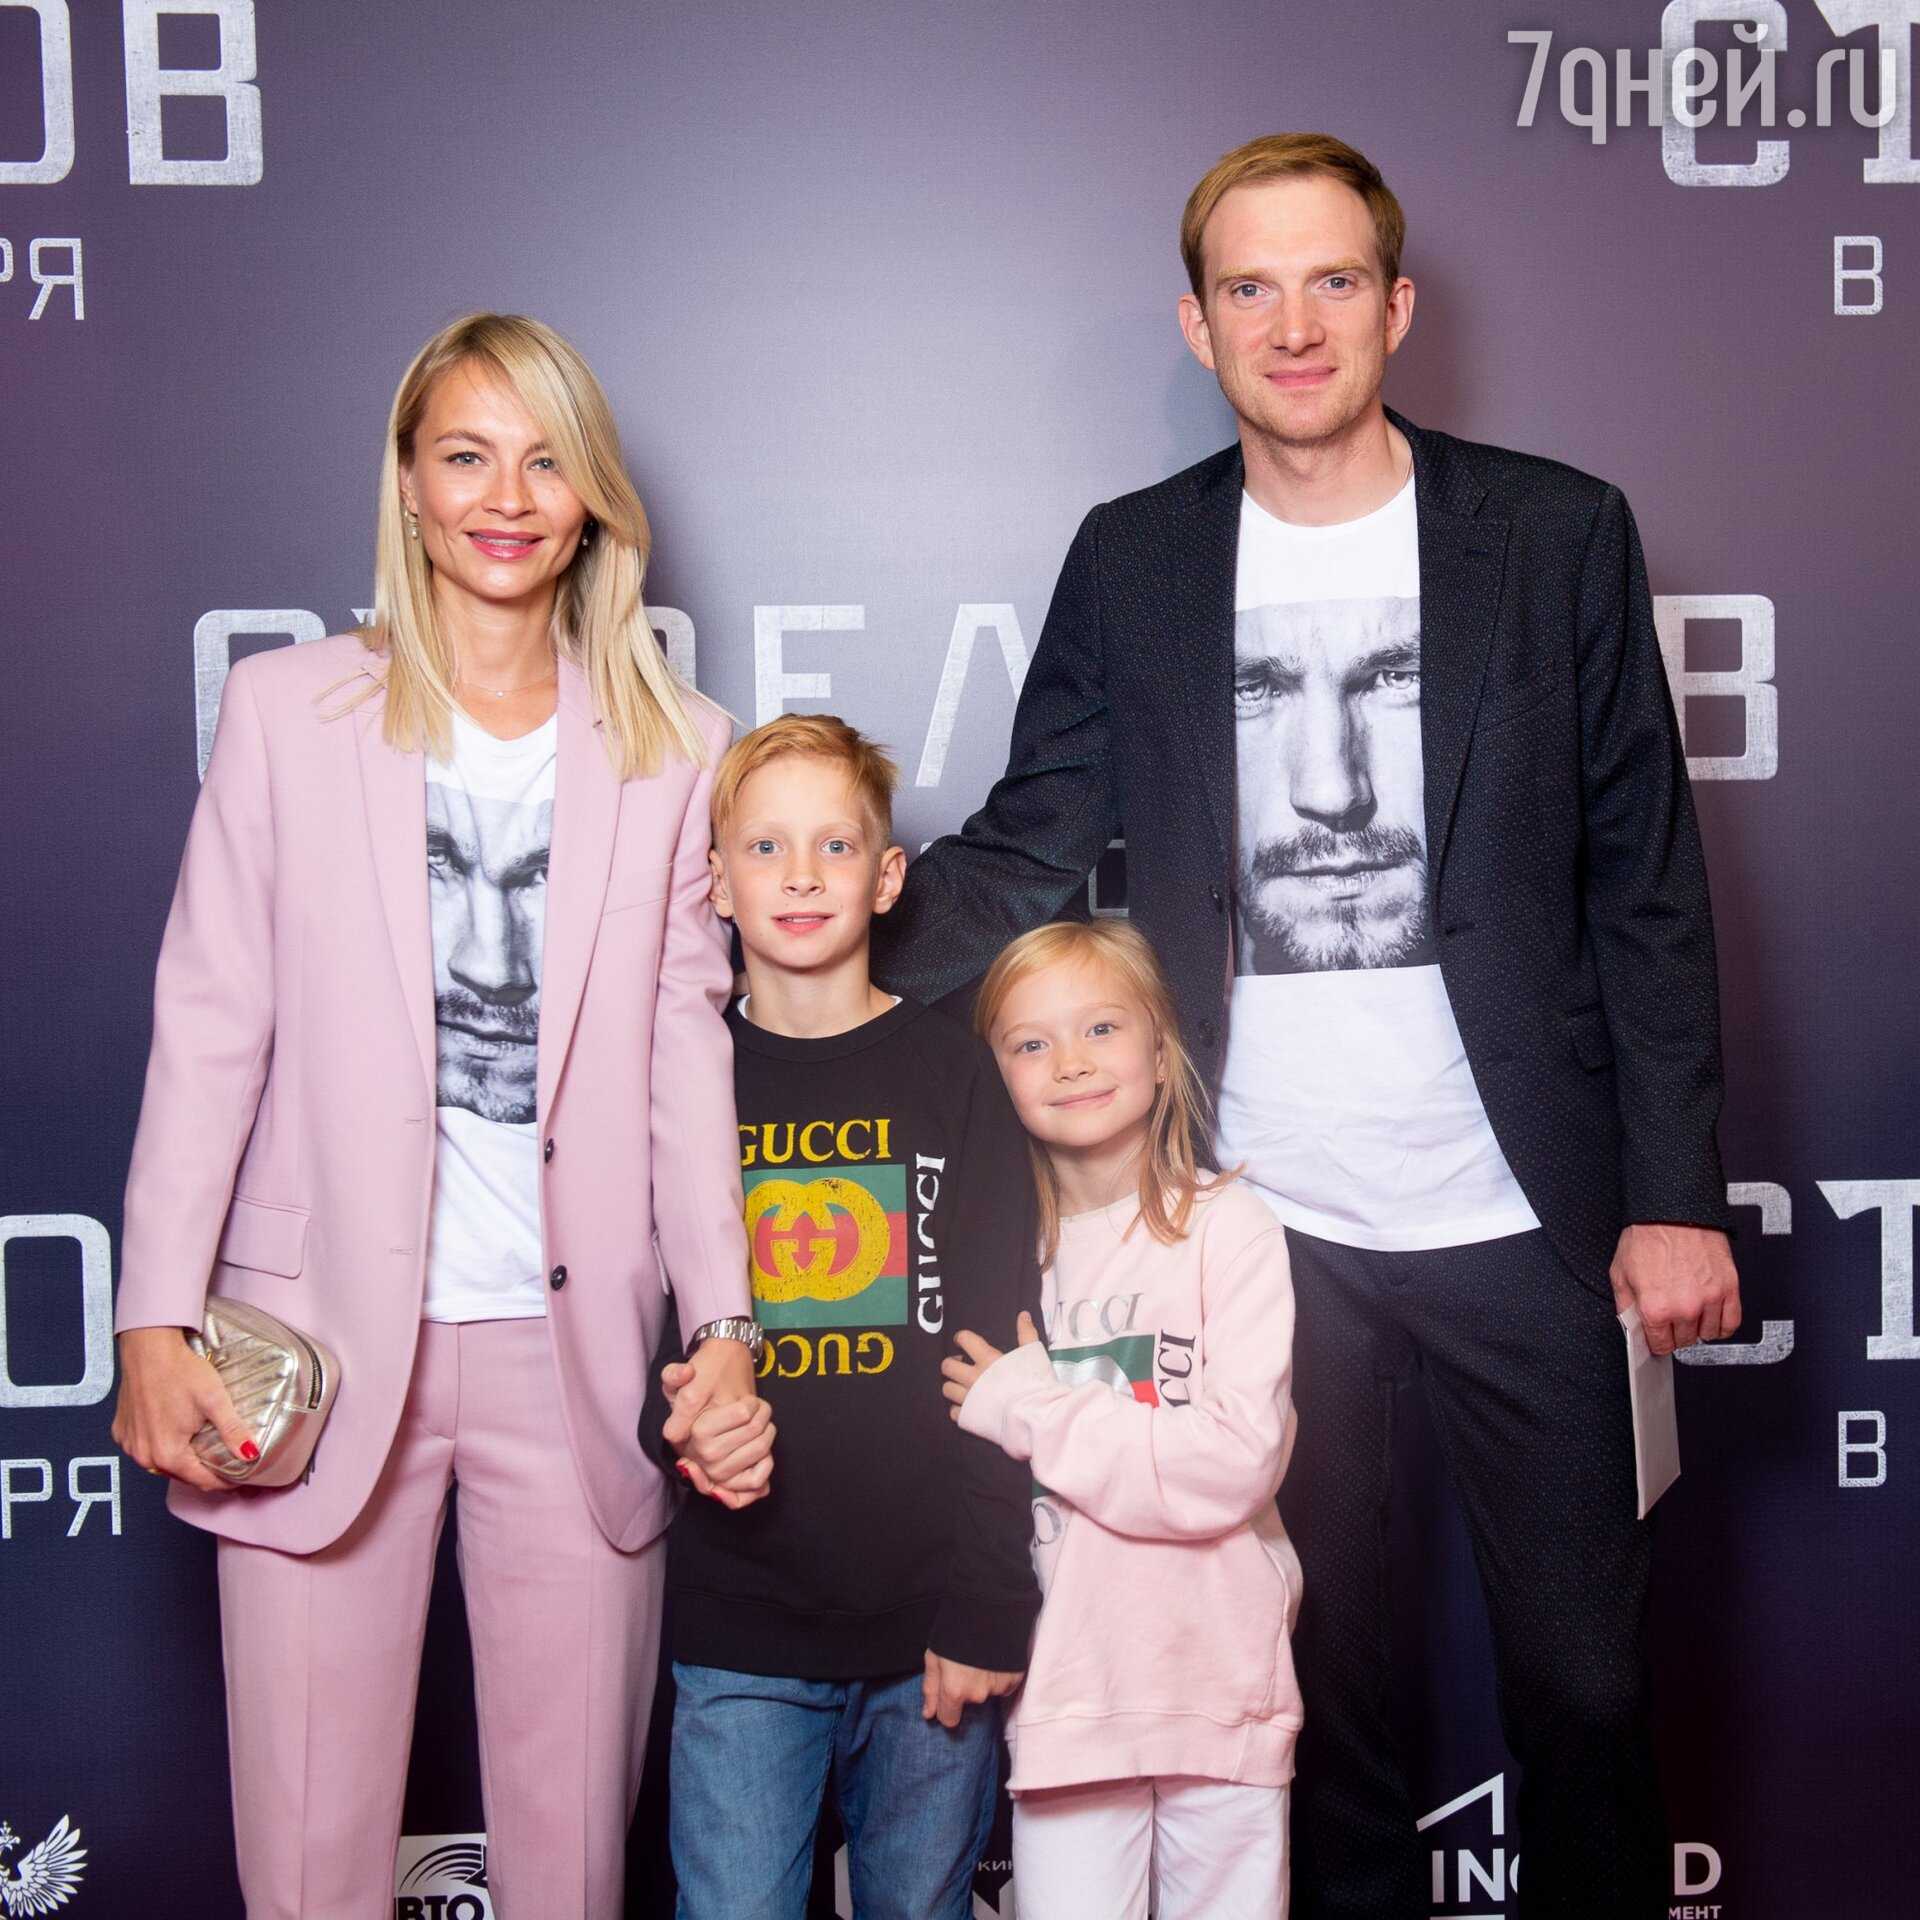 Андрей бурковский: биография, личная жизнь, фото с женой и детьми